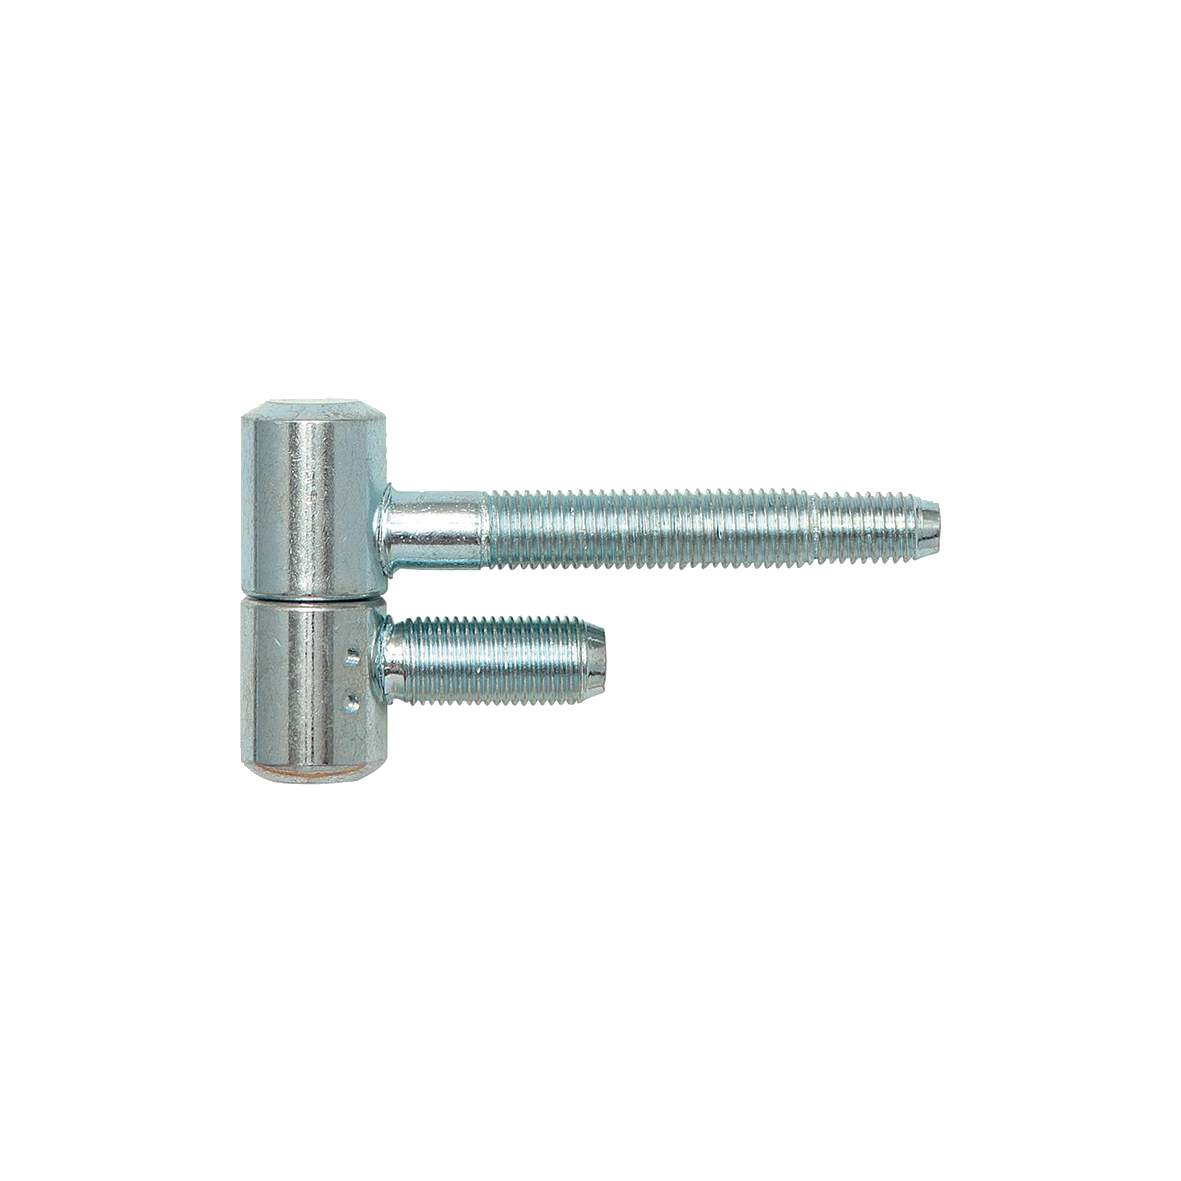 1197316 - Einbohrband Zylinder Stahl vern.16mm,f.Stahlzargen,2erSB